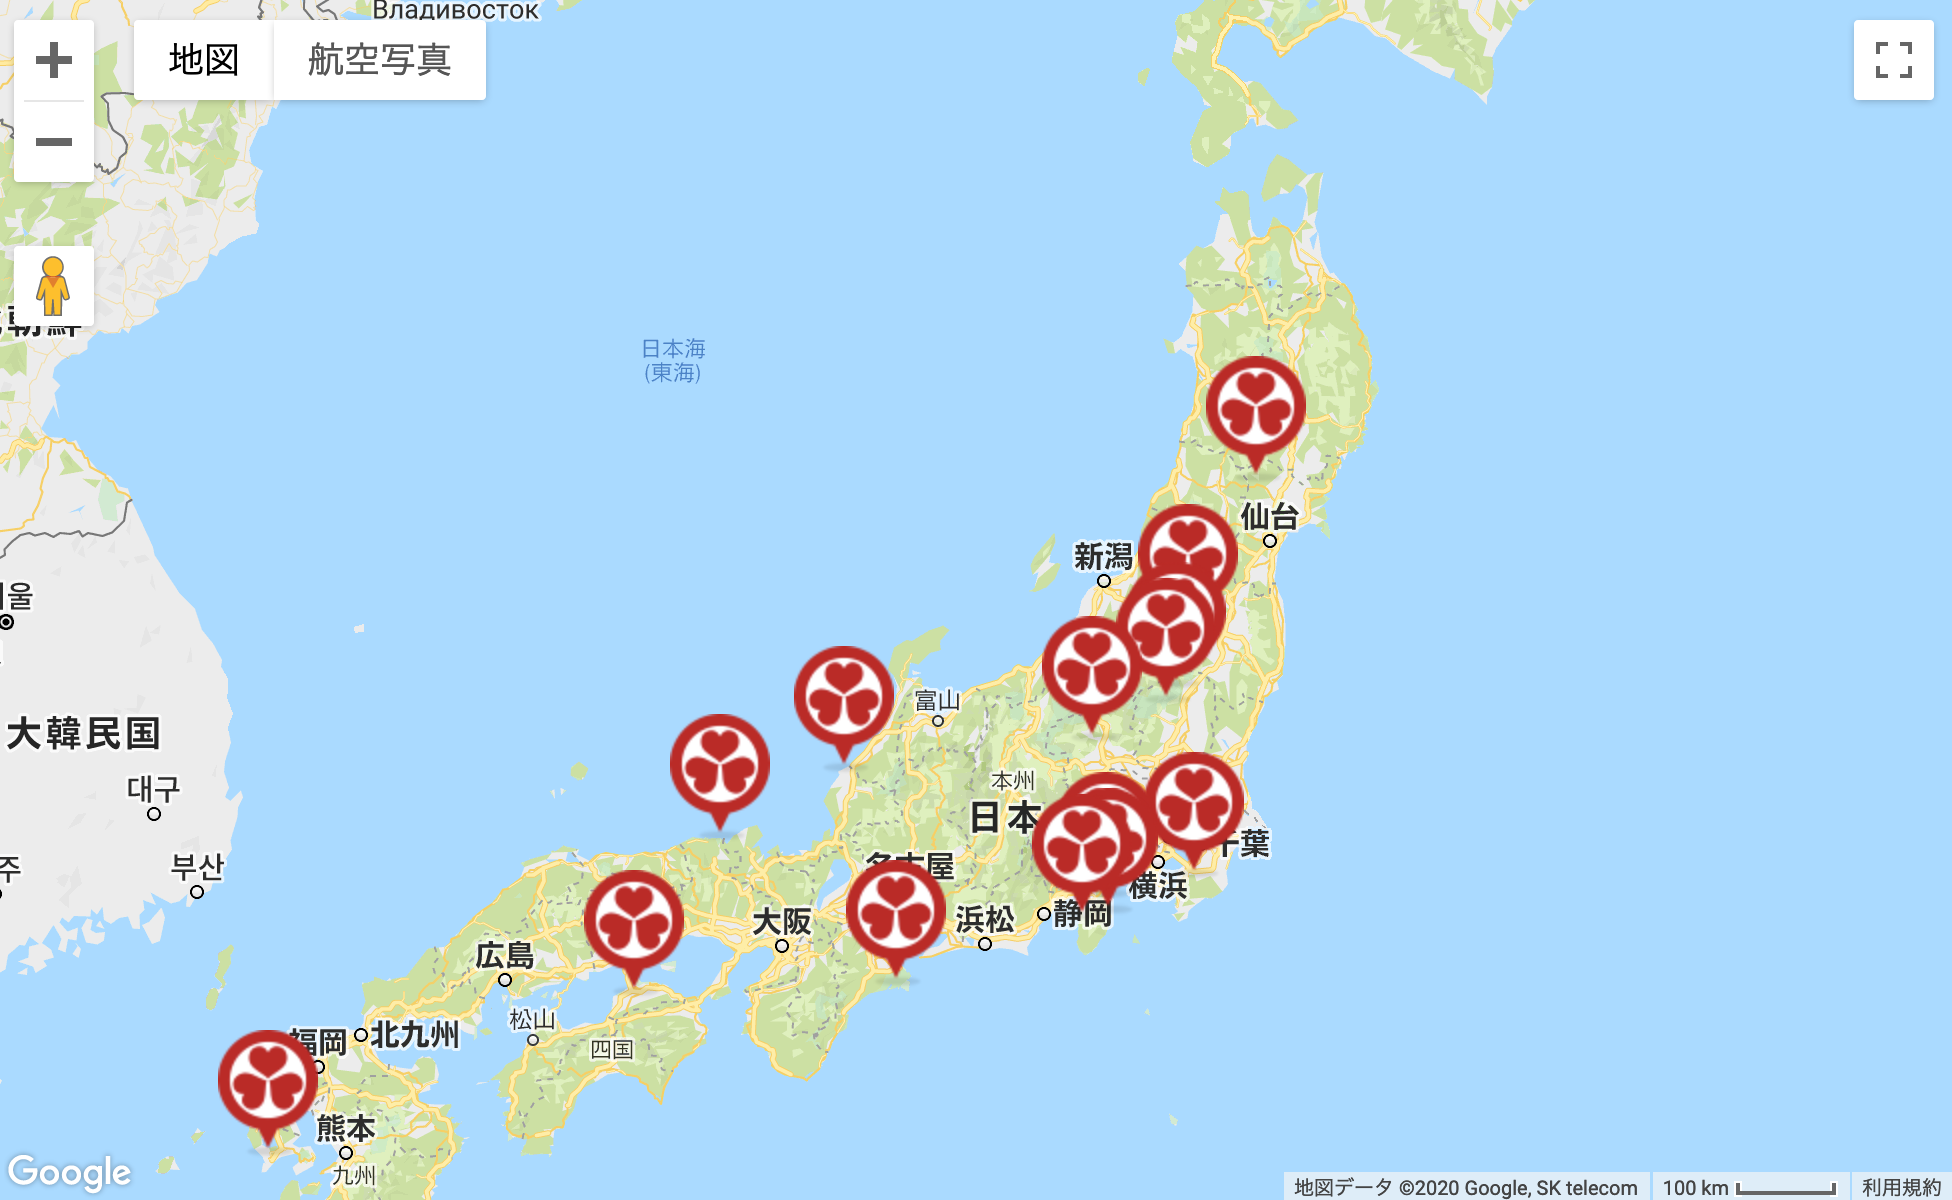 大江戸温泉の物件エリアポートフォリオマップ